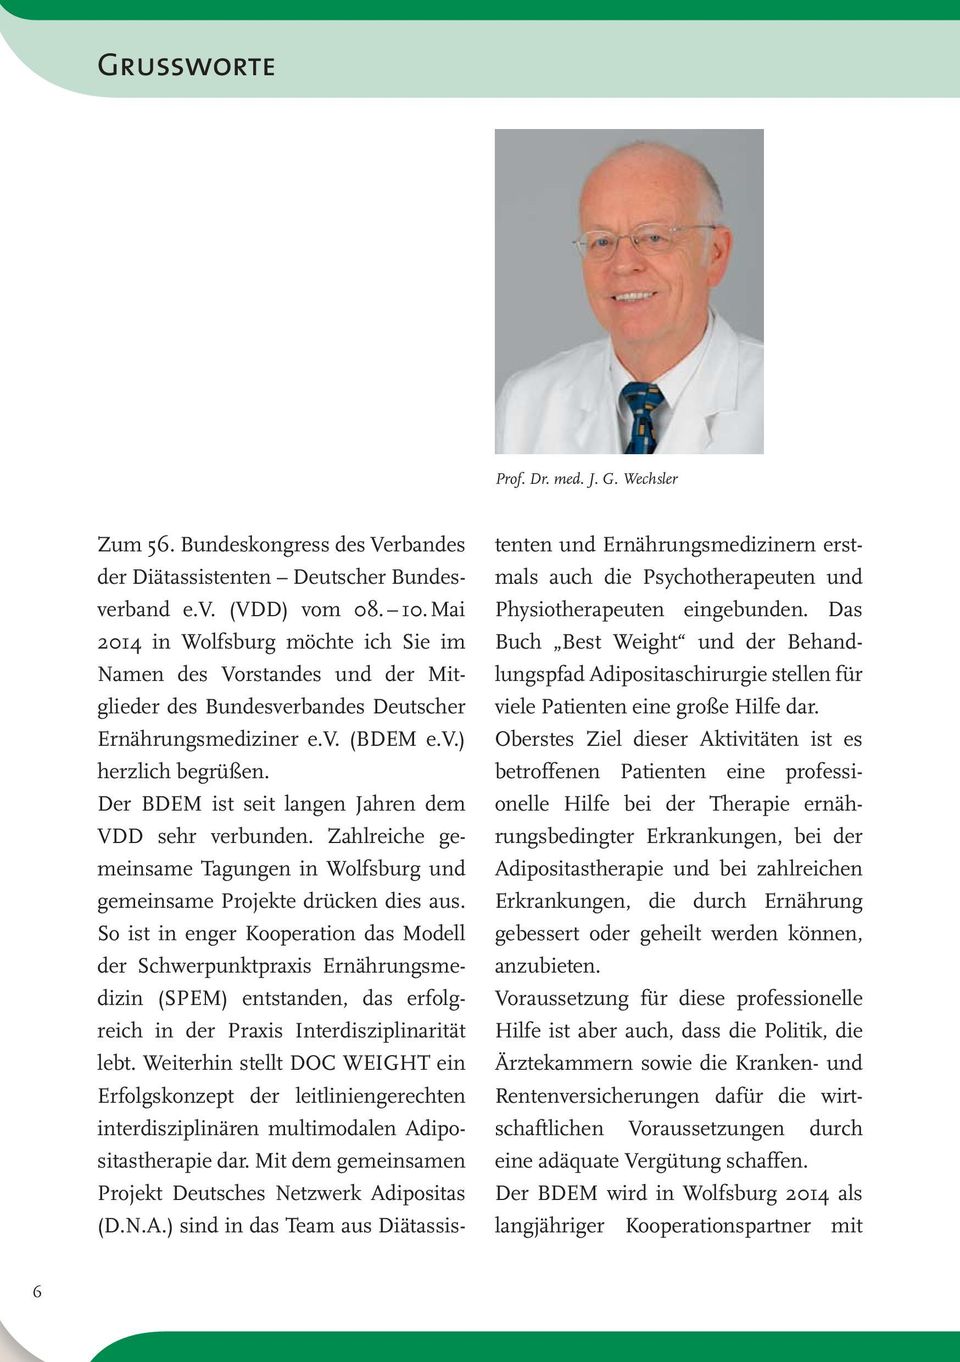 Der BDEM ist seit langen Jahren dem VDD sehr verbunden. Zahlreiche gemeinsame Tagungen in Wolfsburg und gemeinsame Projekte drücken dies aus.